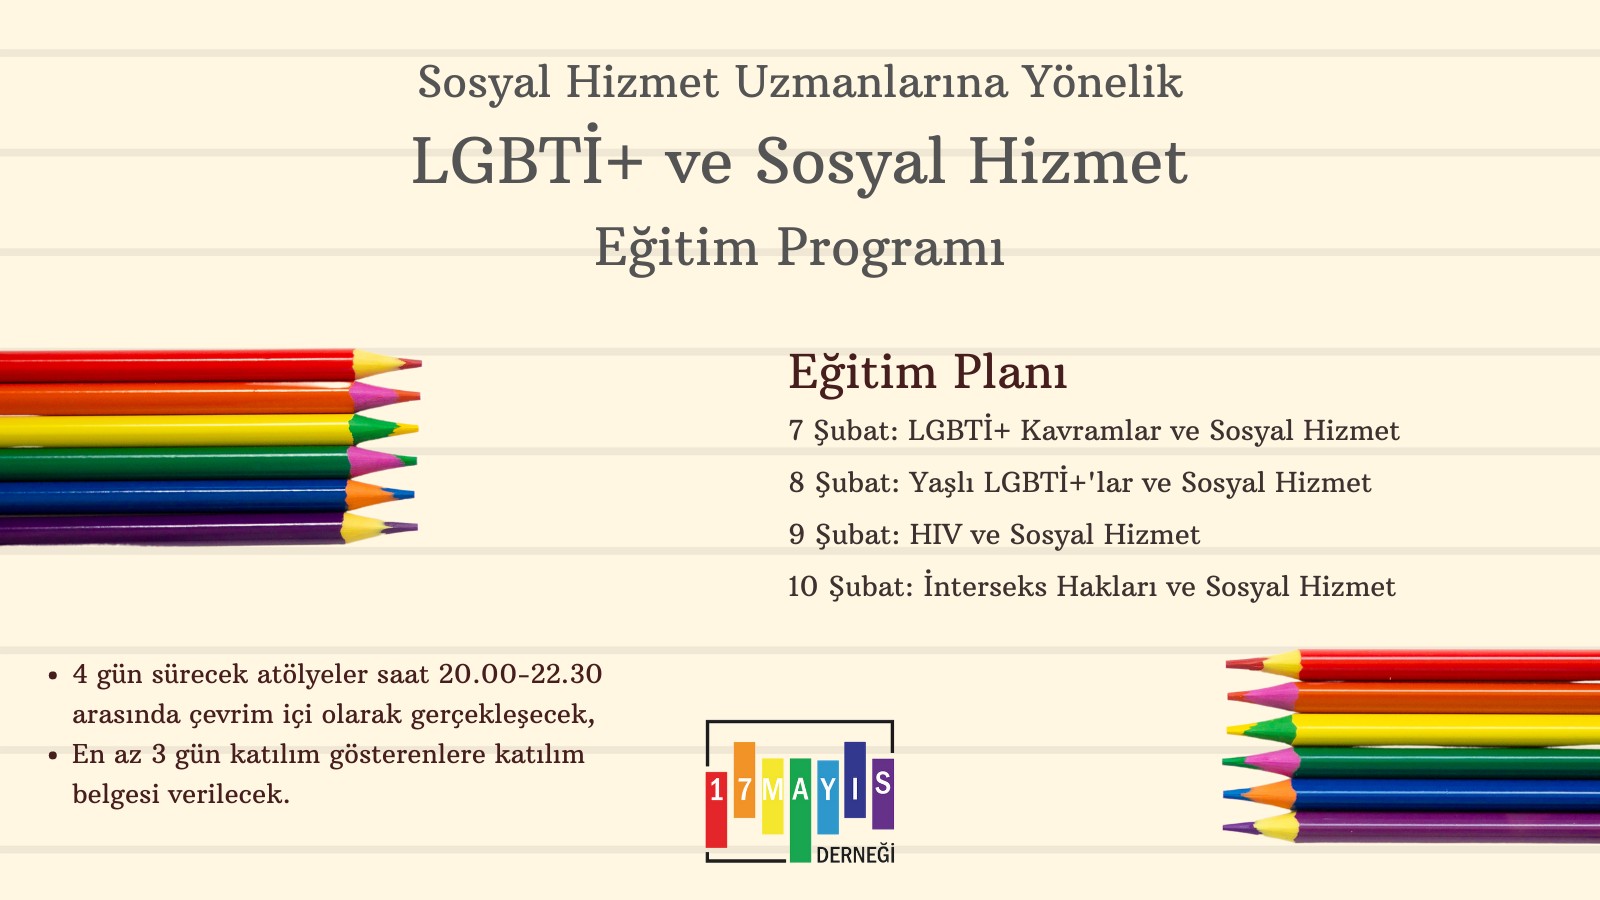 LGBTİ+ ve Sosyal Hizmet Eğitim Programı'na Kayıtlar Başladı! - 17 Mayıs